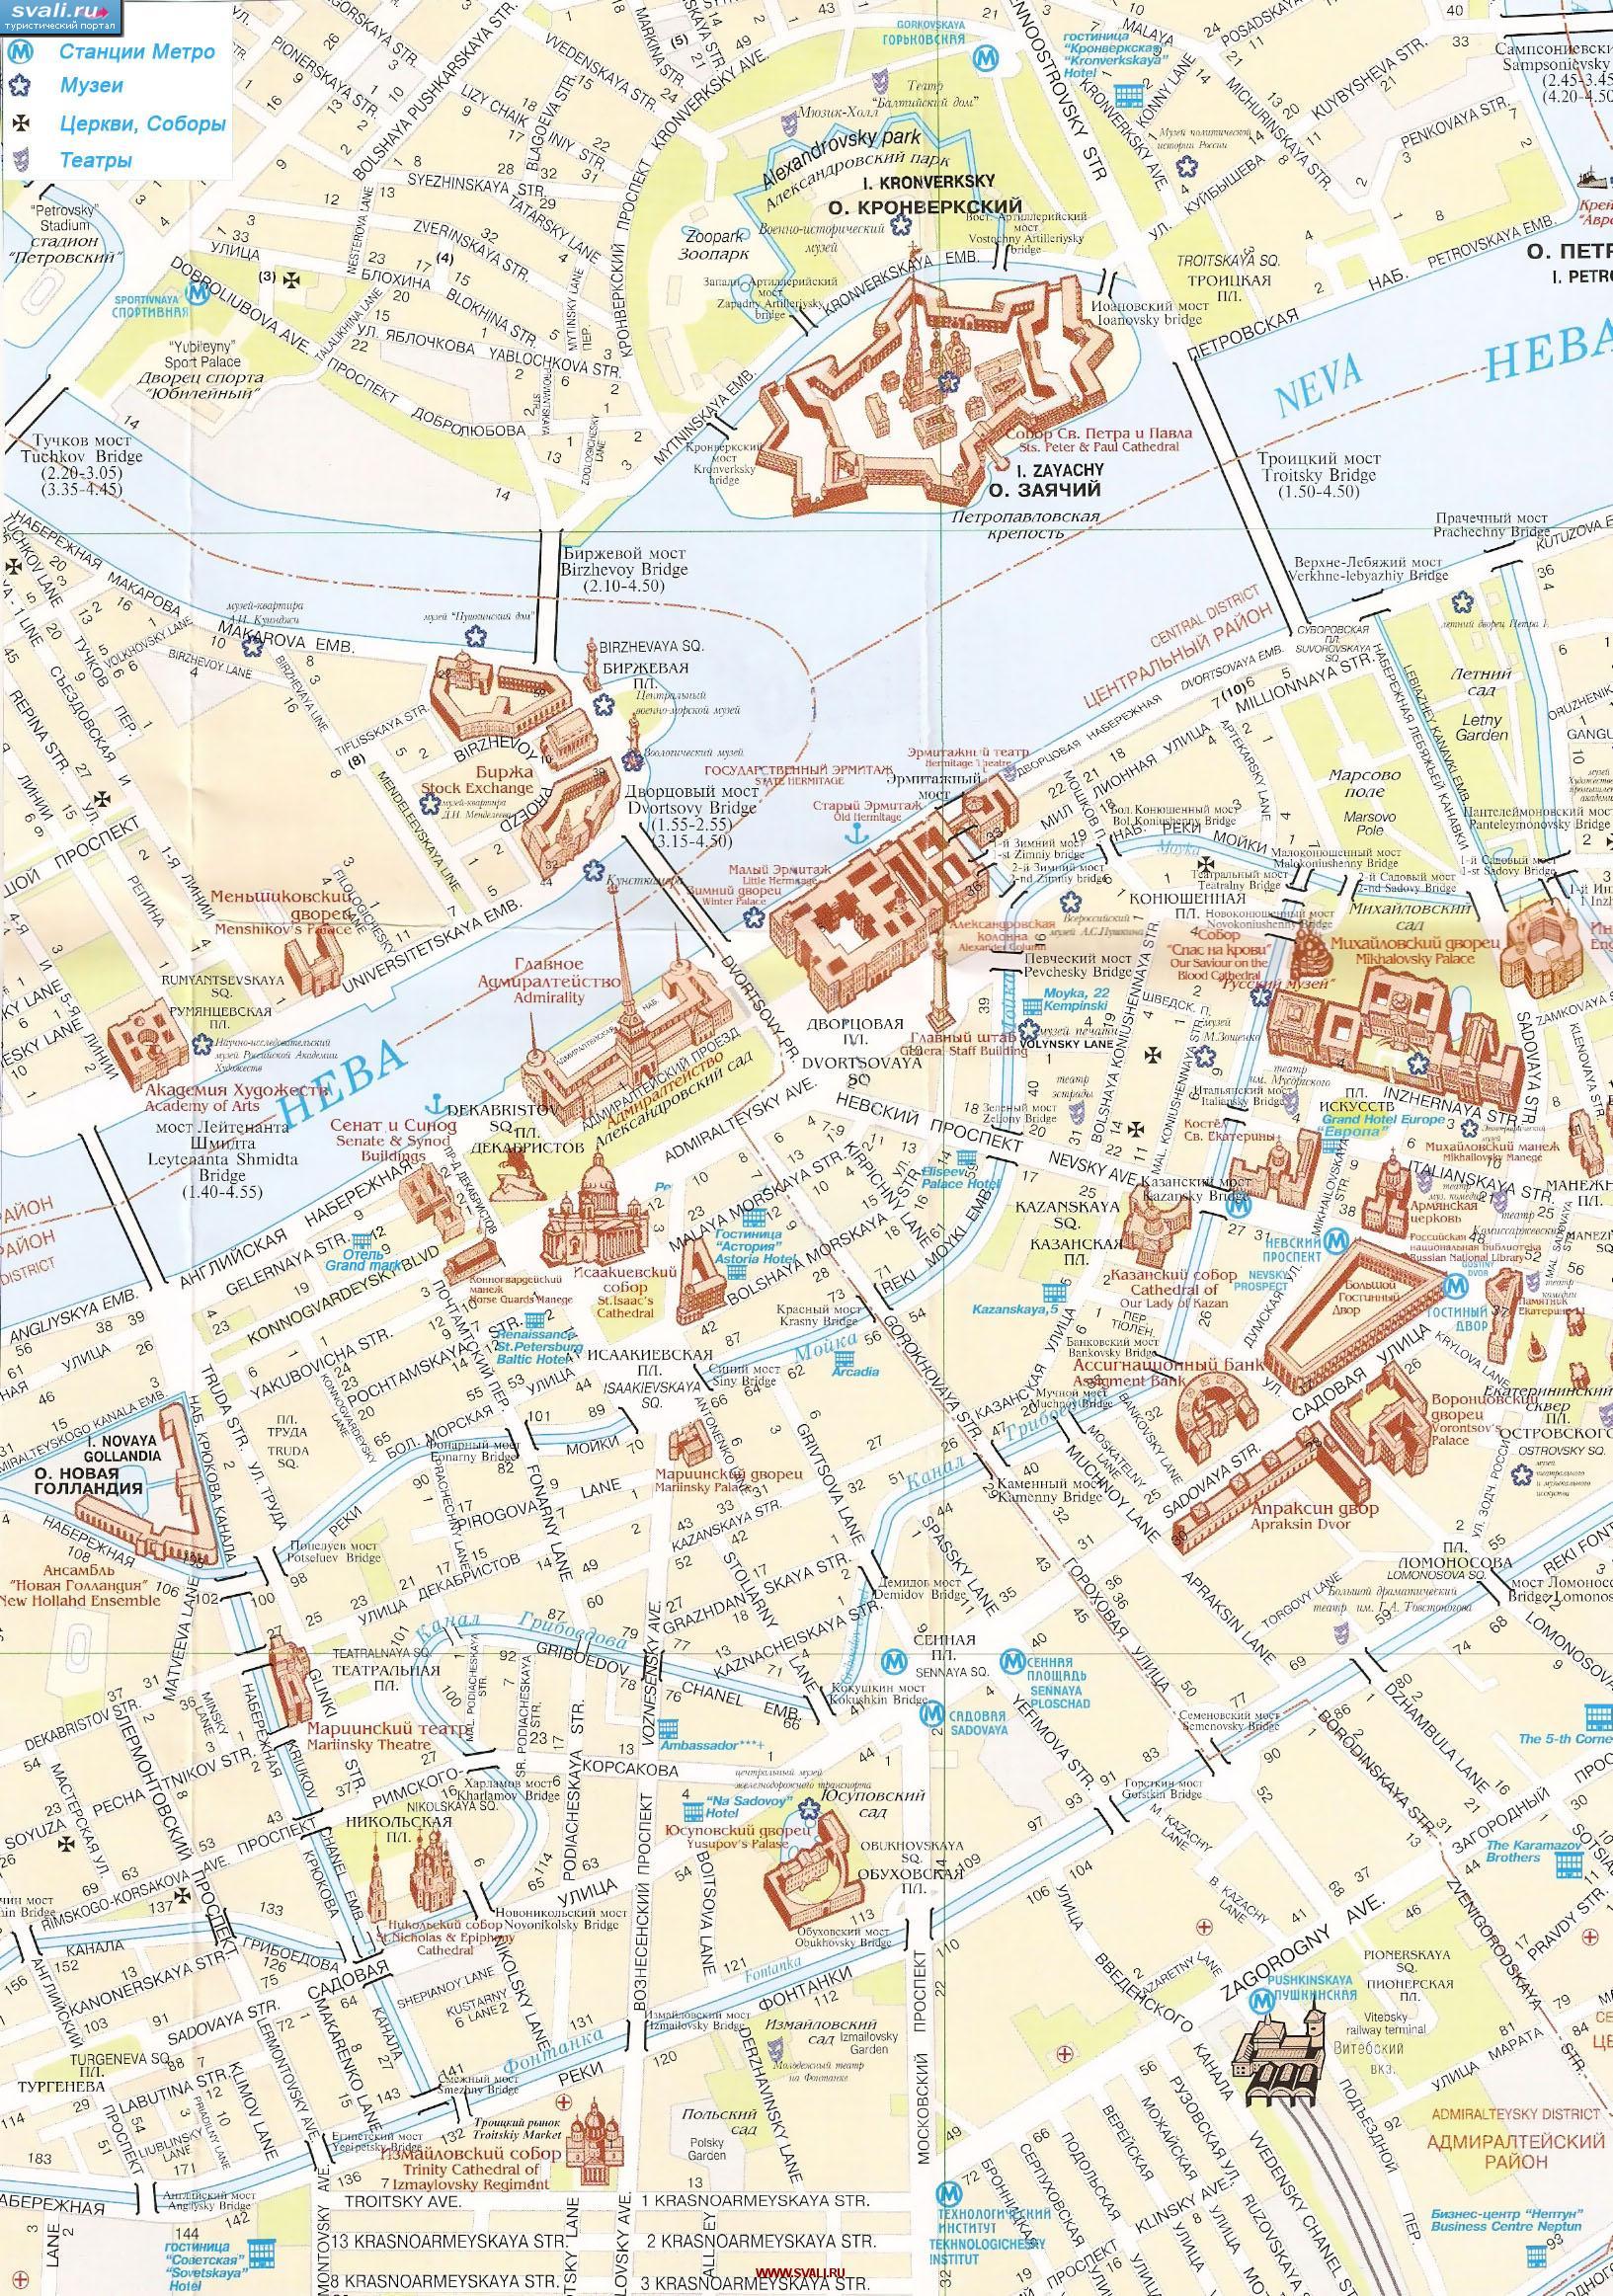 Подробная туристическая карта центра Санкт-Петербурга, Россия.